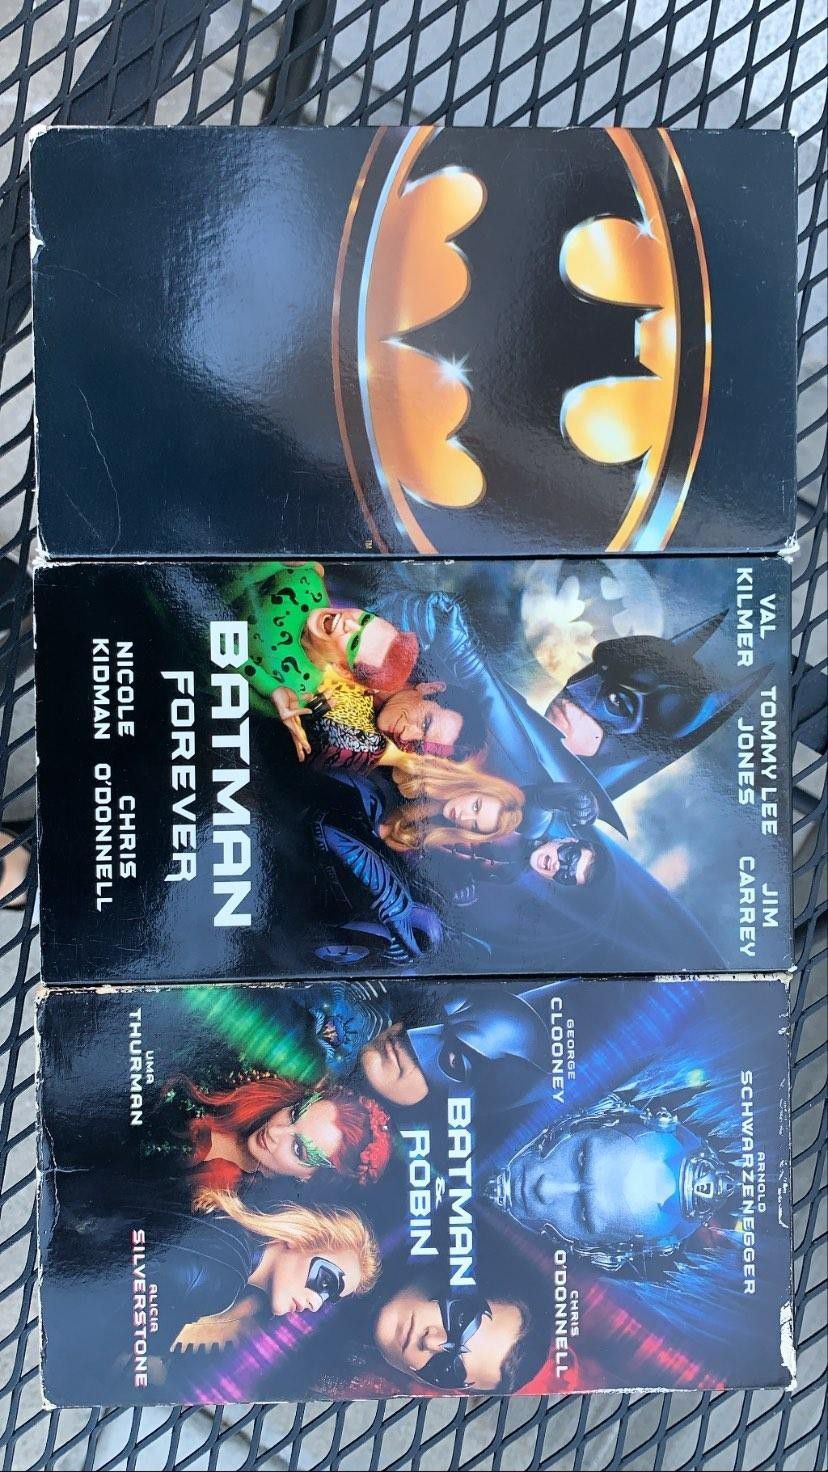 Bat man VHS